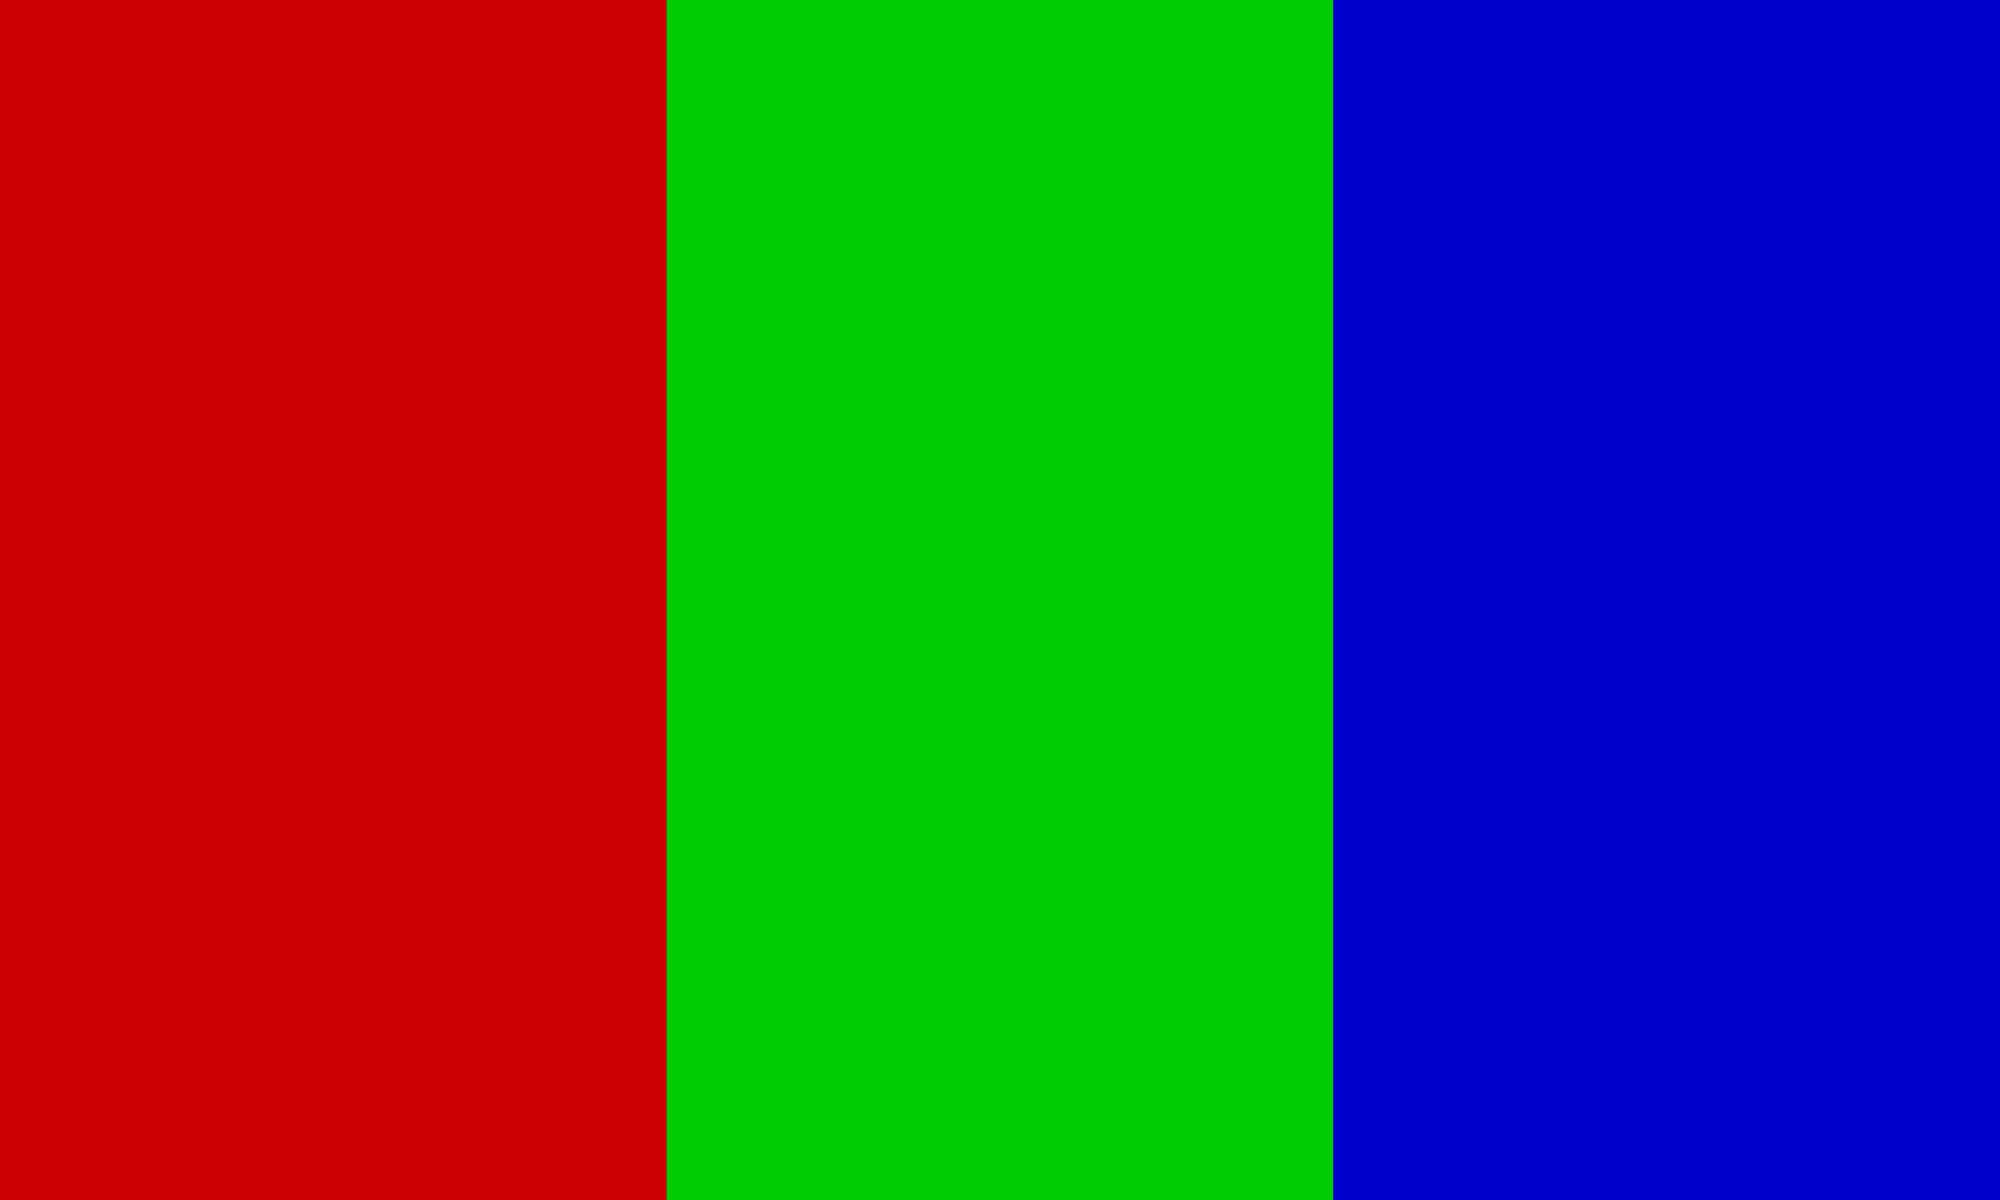 Флаг зеленый желтый зеленый вертикально. Флаг зеленый синий красный. Красно зеленый флаг. Флаг красный синий зеленый по горизонтали. Красно зелёный флаг чей.